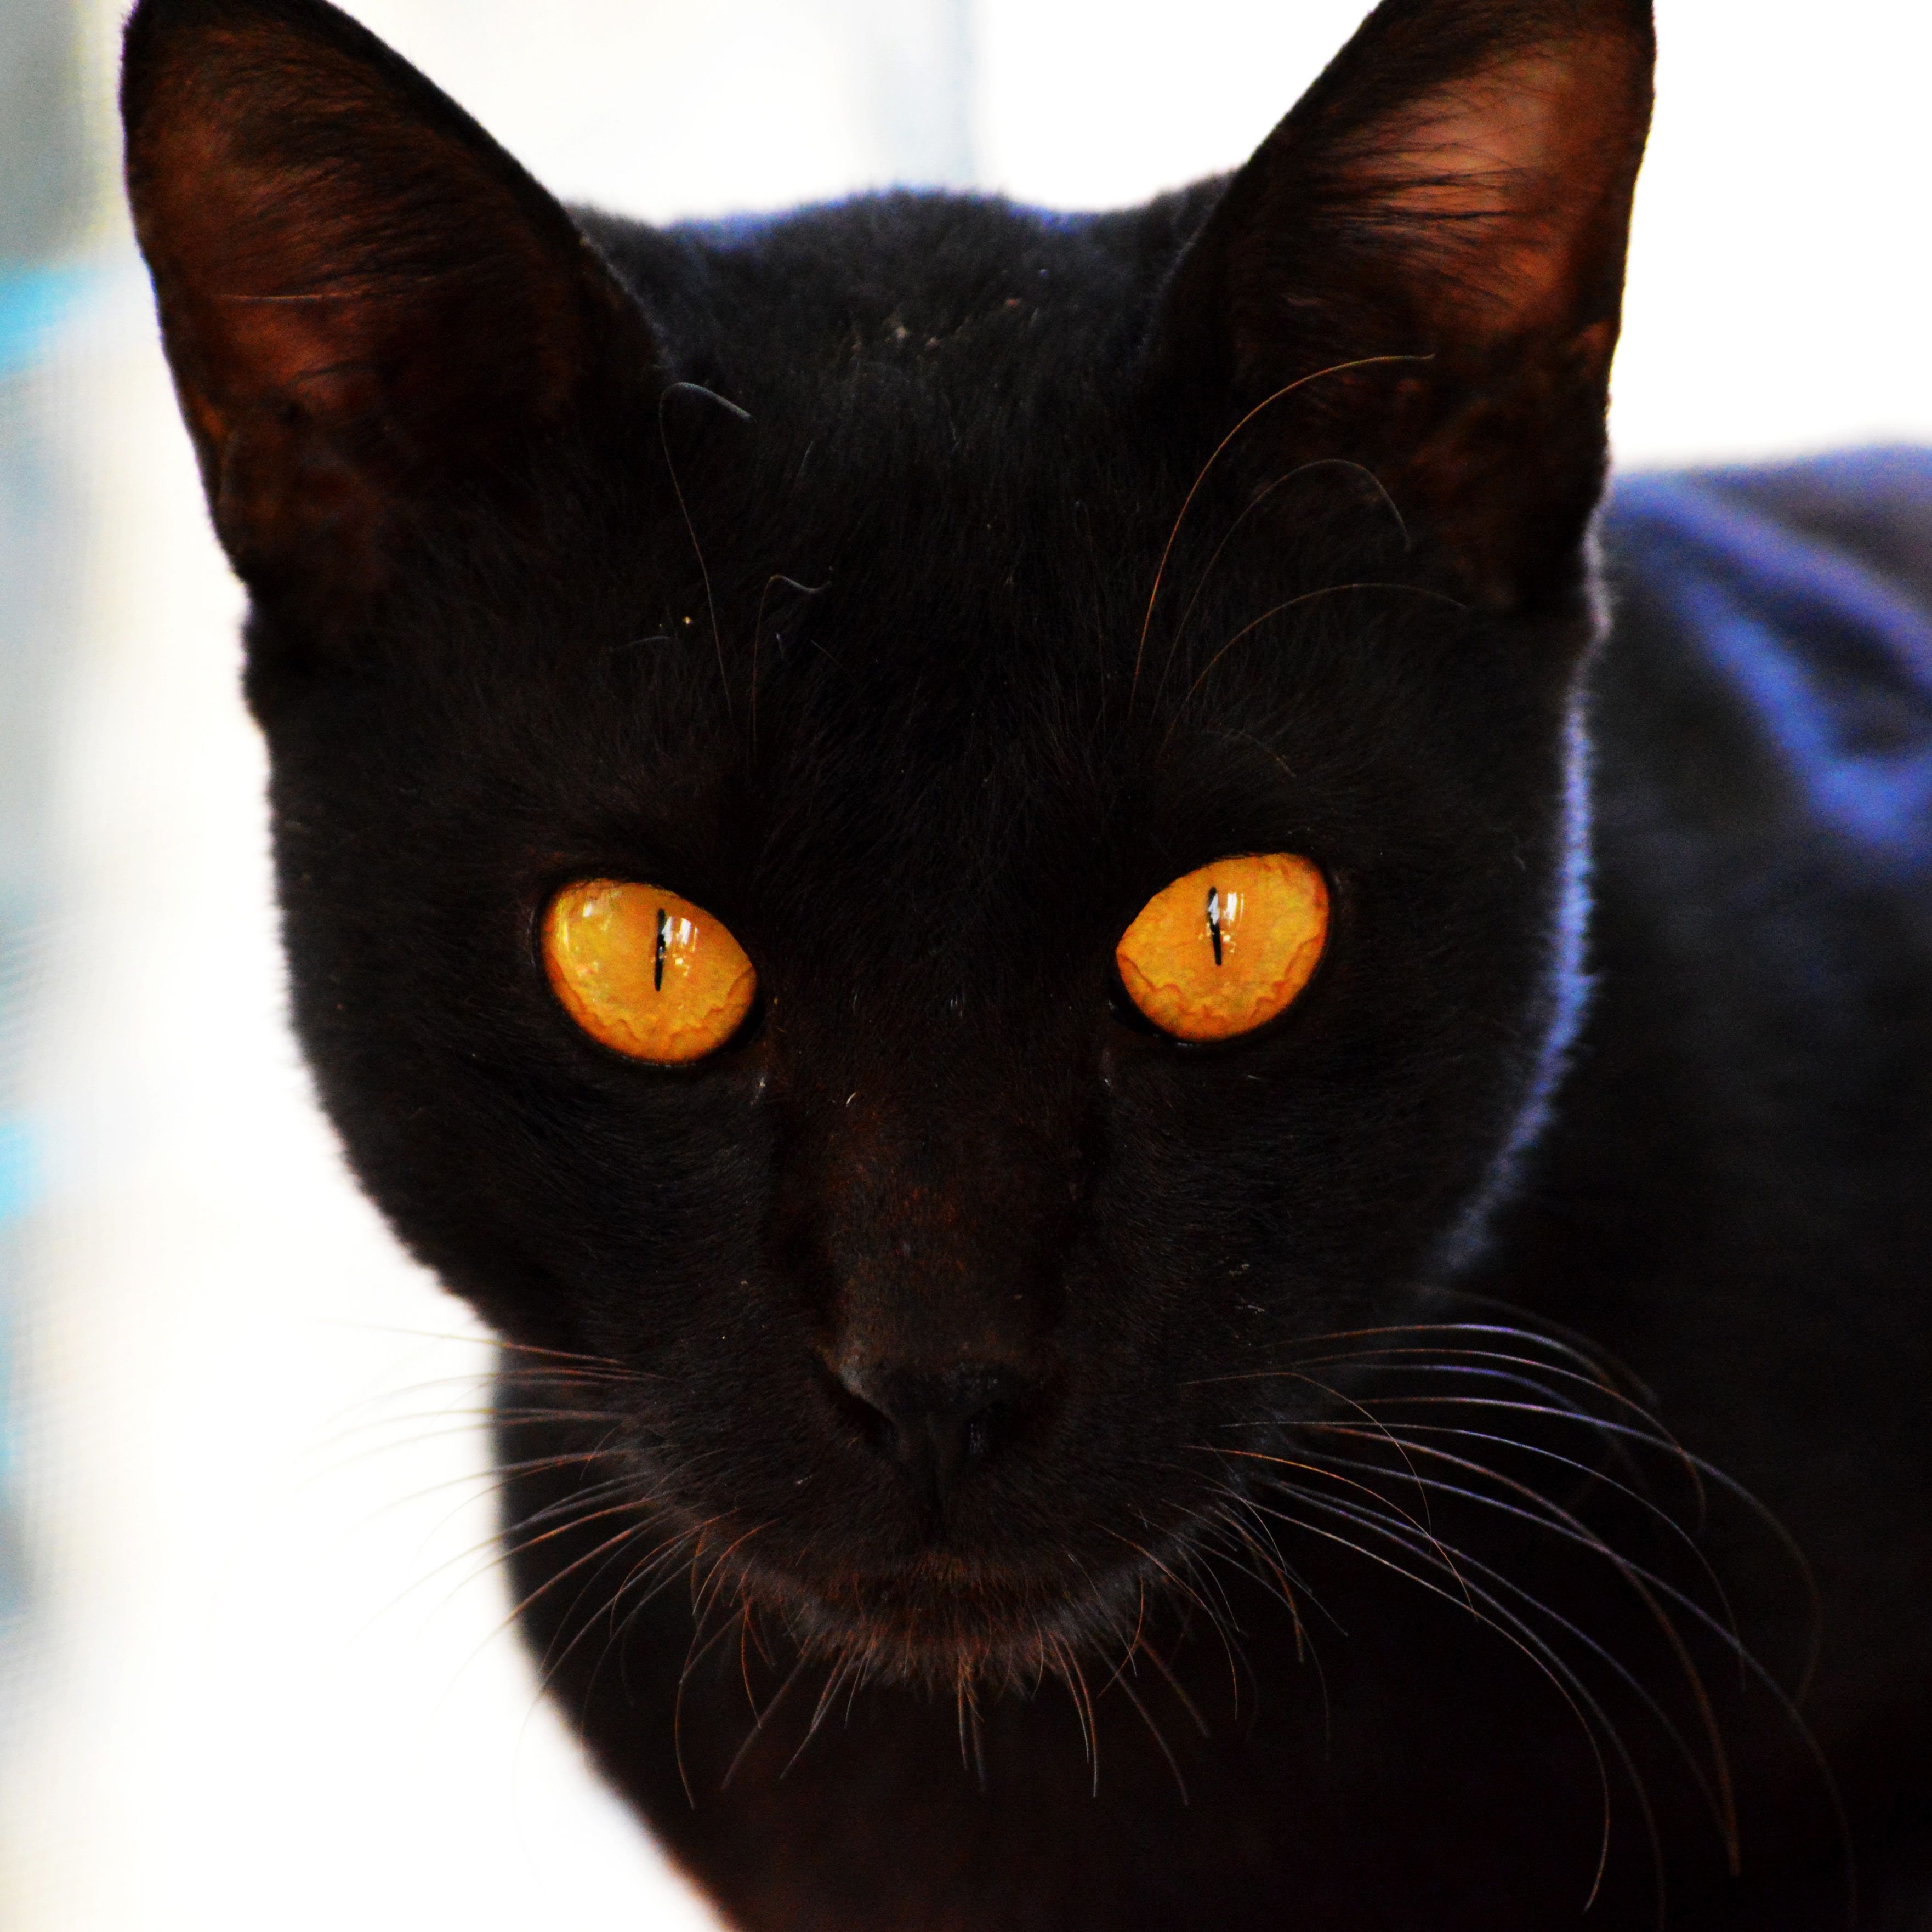 Порода черной кошки с желтыми глазами. Бомбейская кошка длинношерстная. Чёрная кошка порода Бомбейская. Бомбейская кошка черная с желтыми глазами. Богемская кошка чёрная.